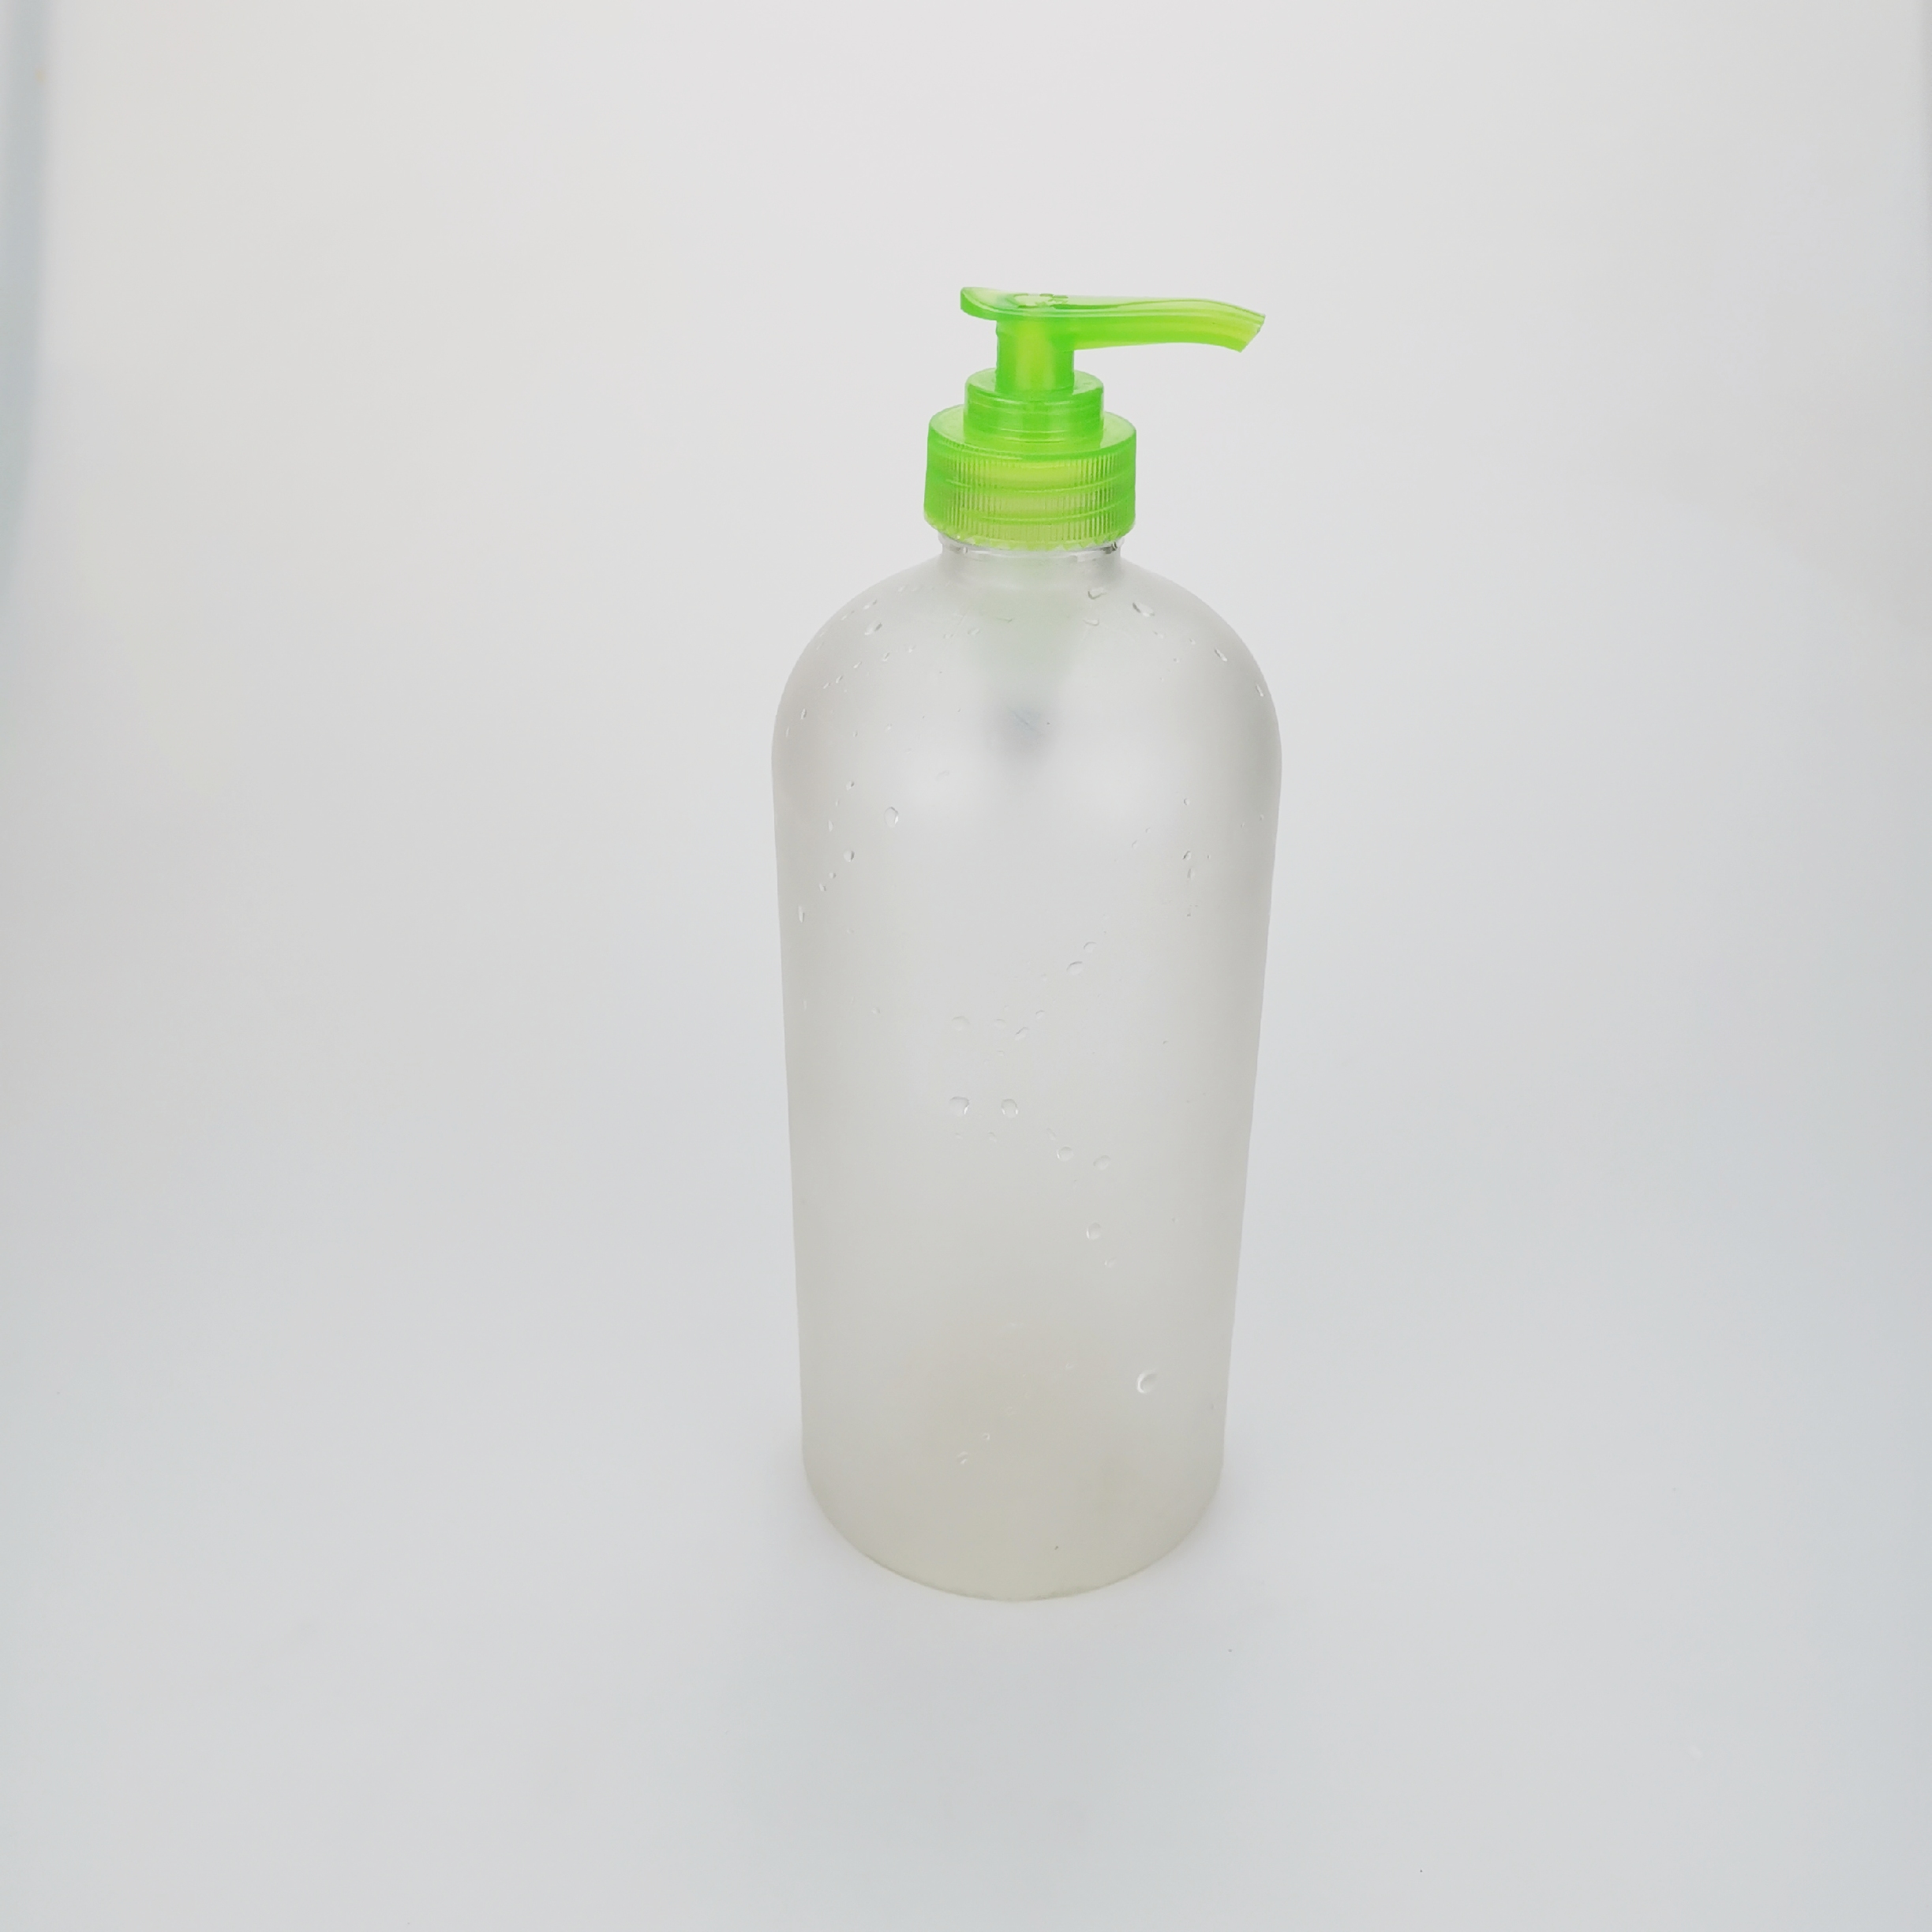 300 ml de 500 ml de plástico vacío Botella de la bomba de loción Botella desinfectante de mano Botella de loción corporal